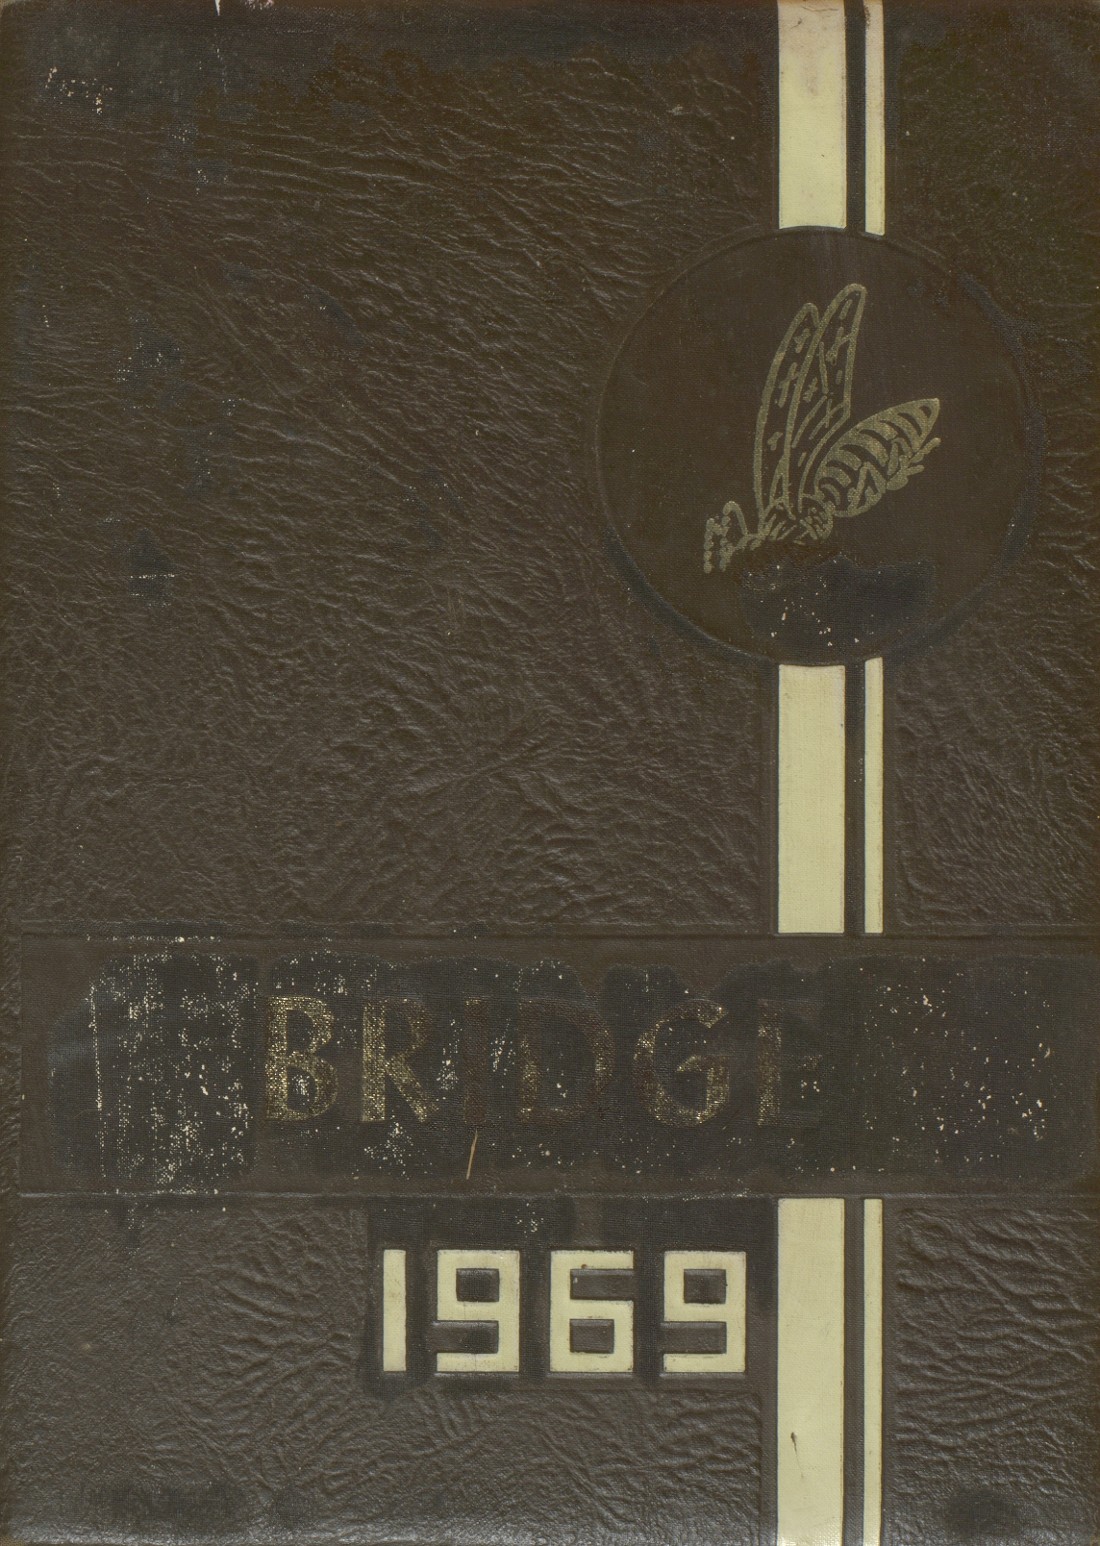 1969 yearbook from Bridgman High School from Bridgman, Michigan for sale